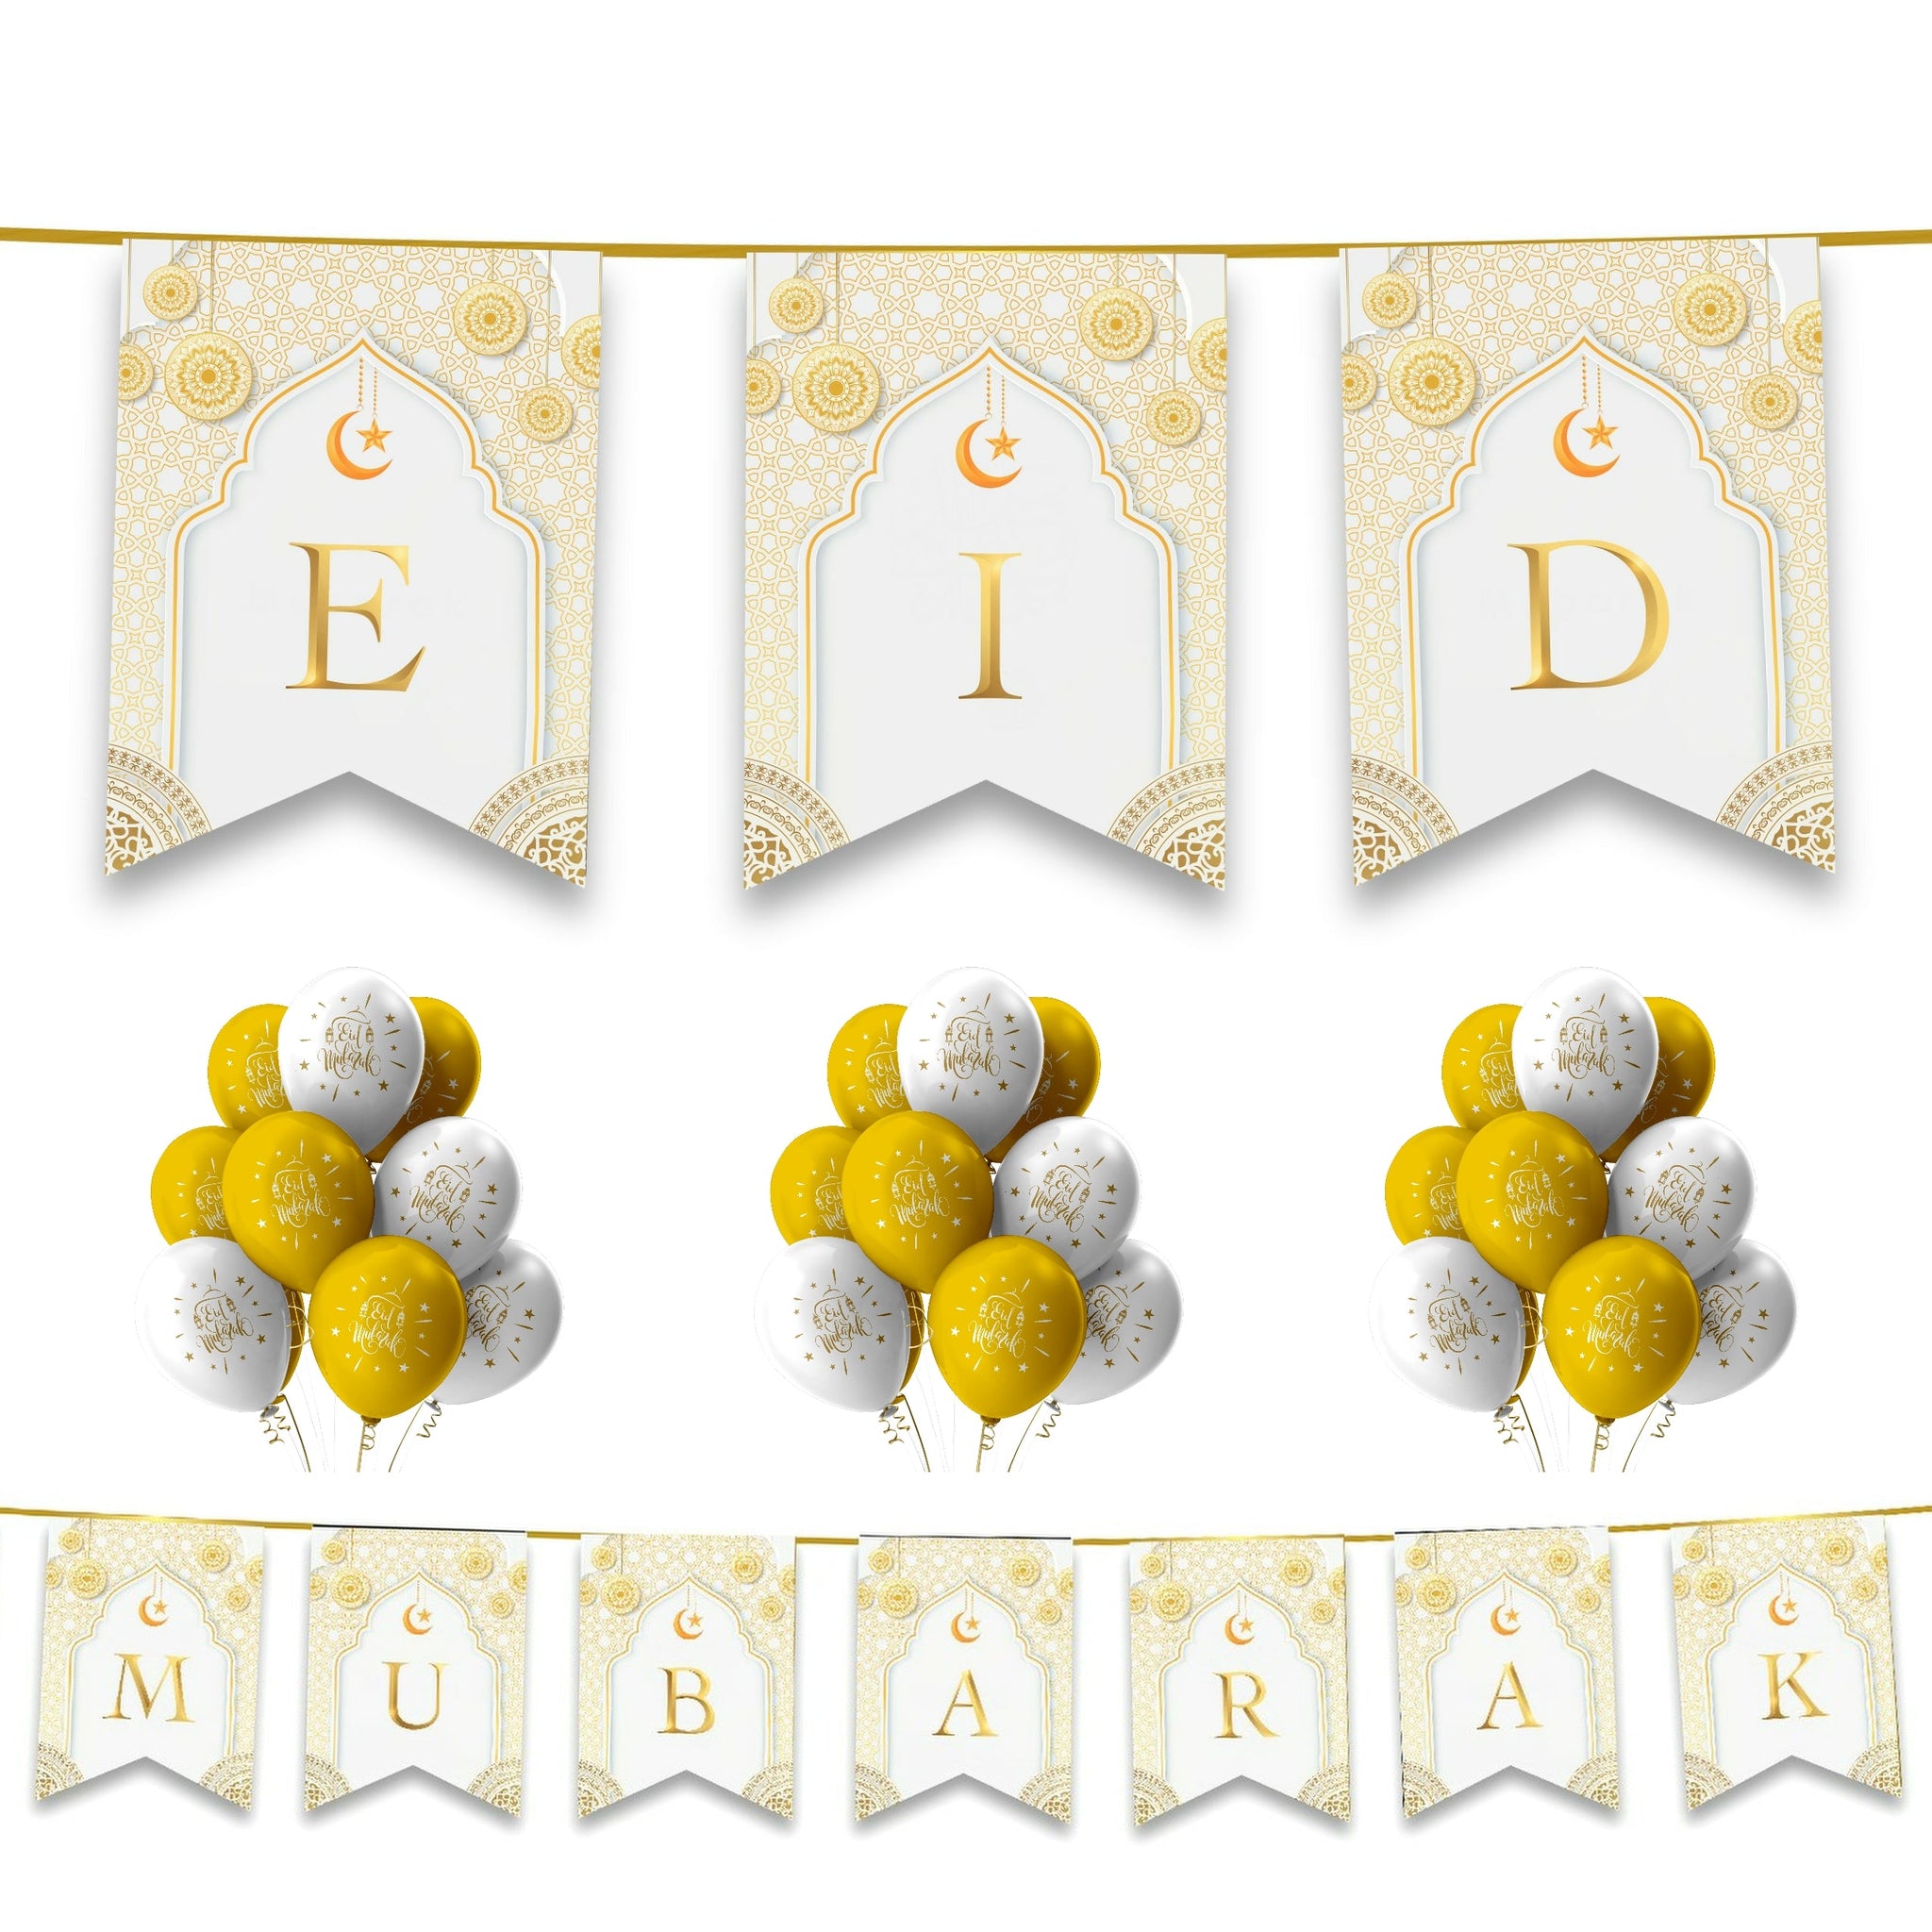 EID Mubarak 20 pc Decoration Set - White & Gold Geometric Arabesque